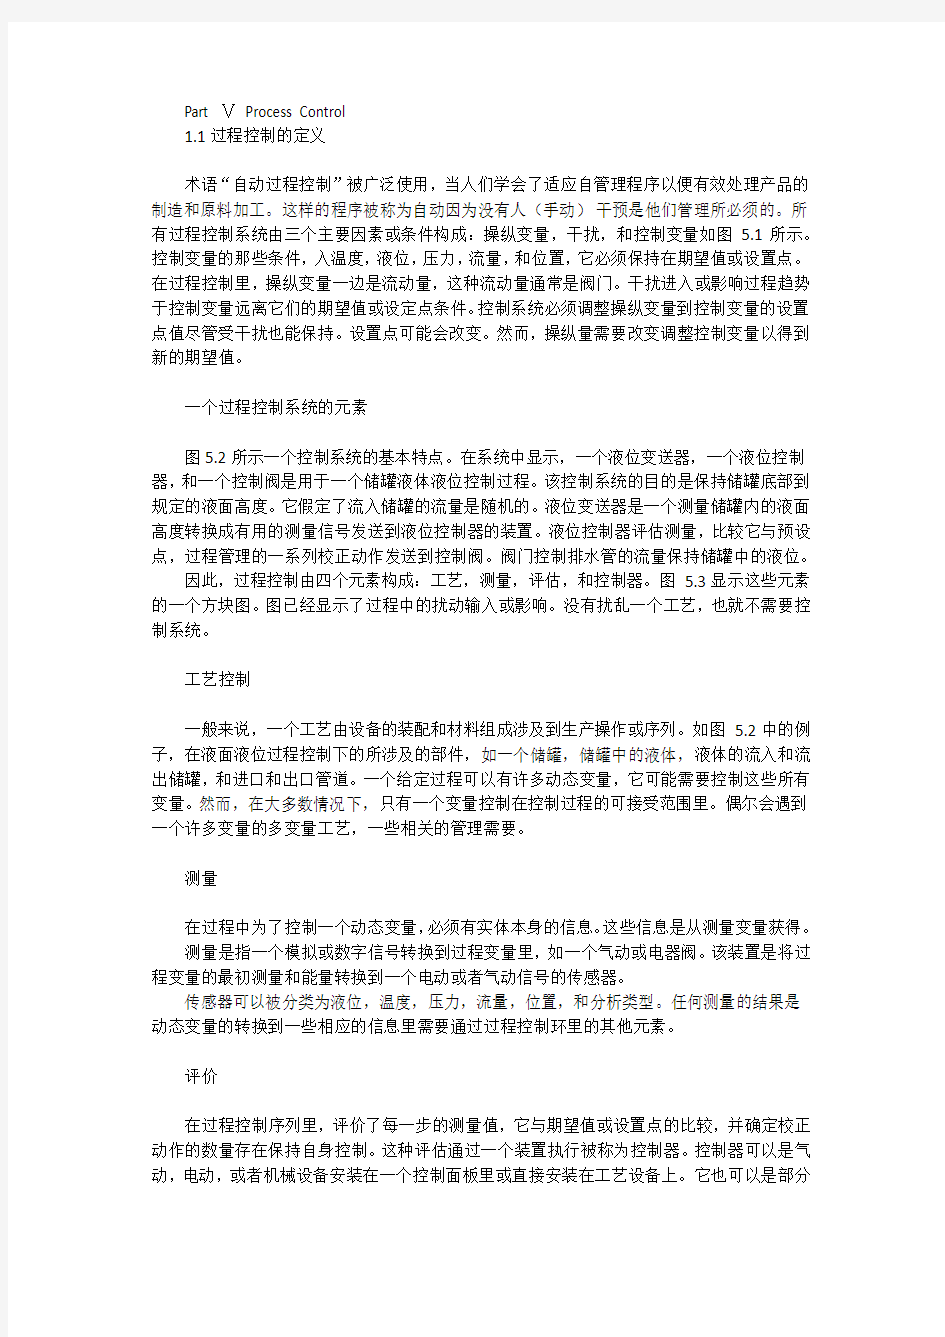 自动化专业英语翻译 PartⅤ-Ⅵ 部分 第二版 王军 重庆大学出版社